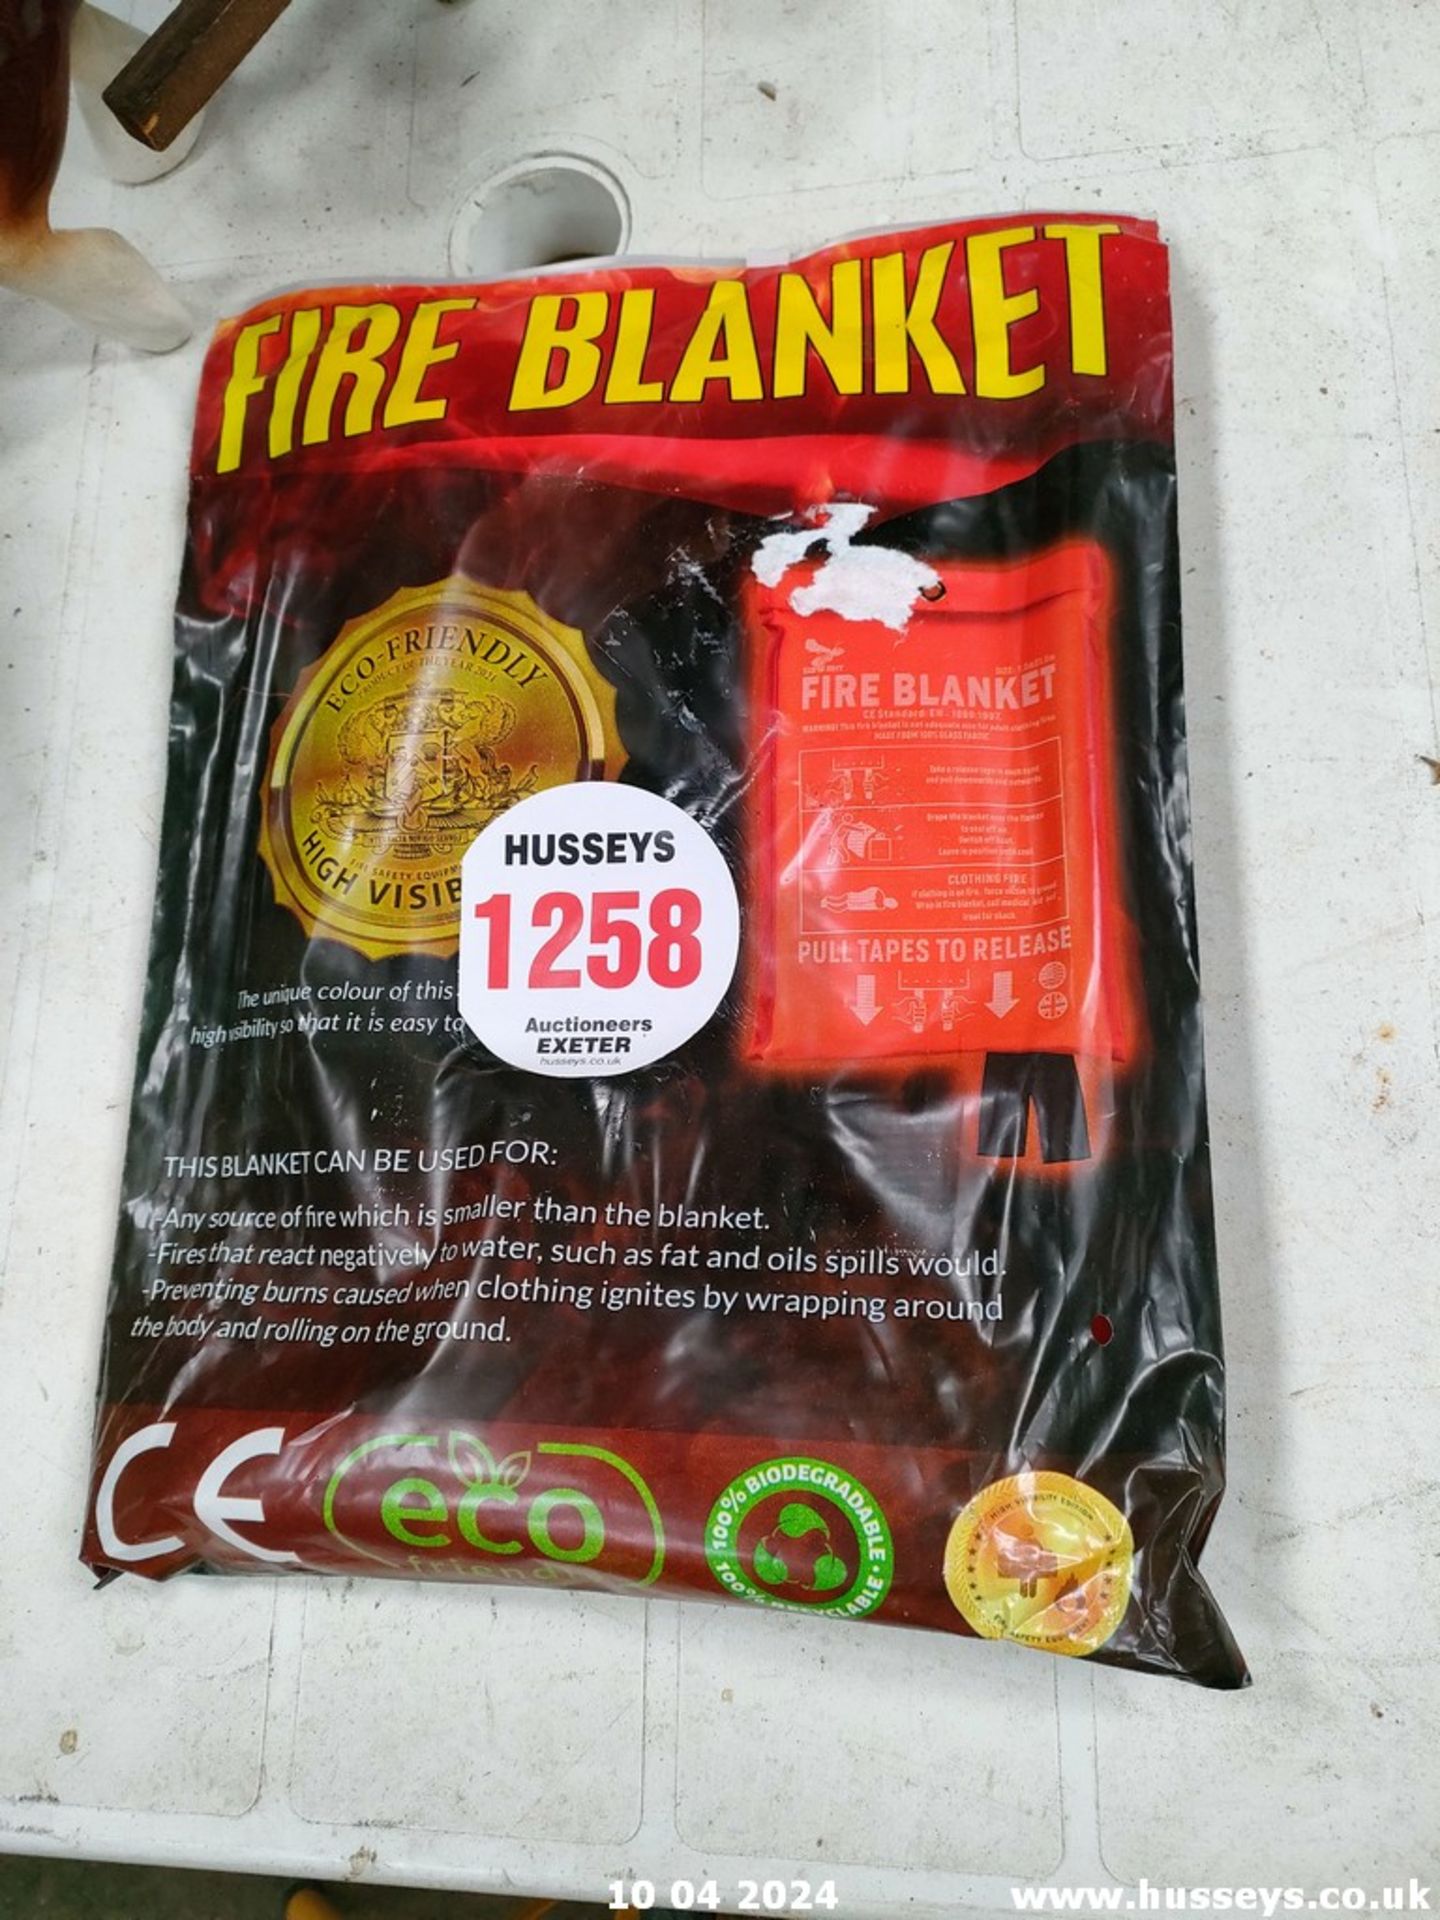 FIRE BLANKET